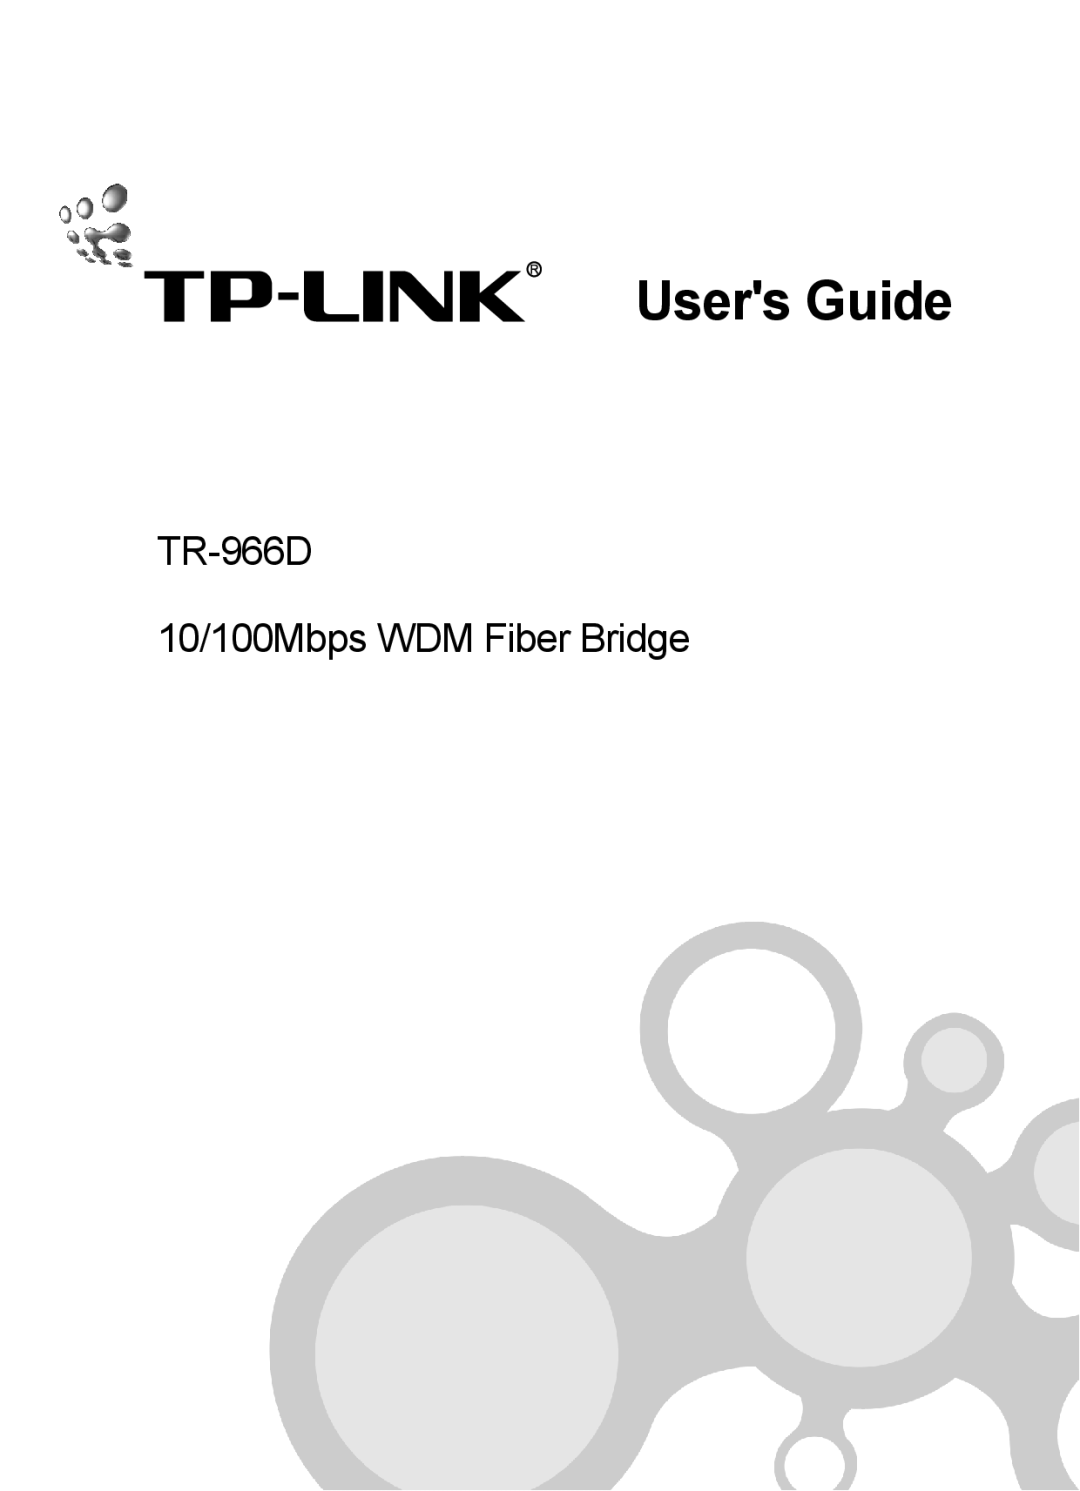 TP-Link manual Users Guide, TR-966D 10/100Mbps WDM Fiber Bridge 